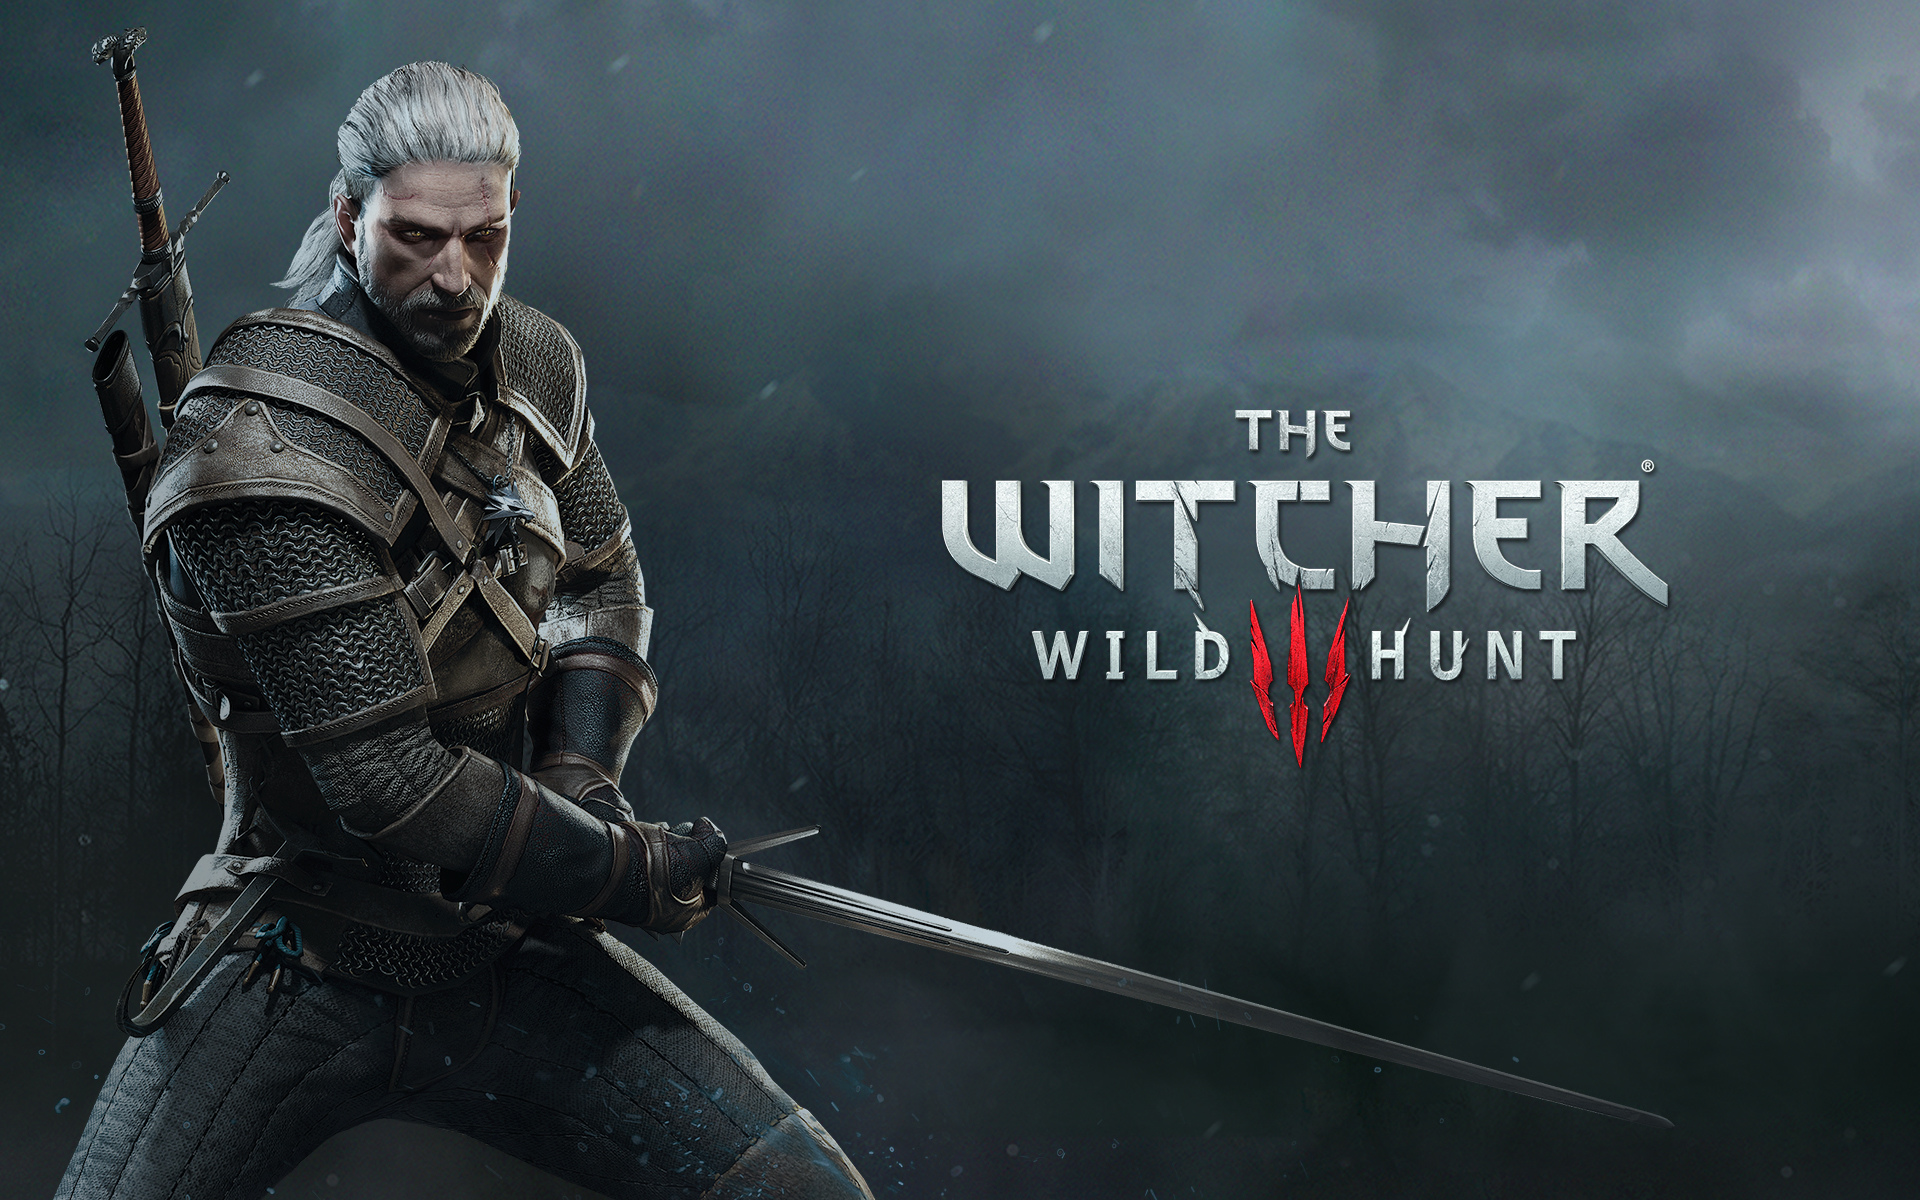 Fondos de pantalla The Witcher 3 Wild Hunt, Wallpapers Gratis